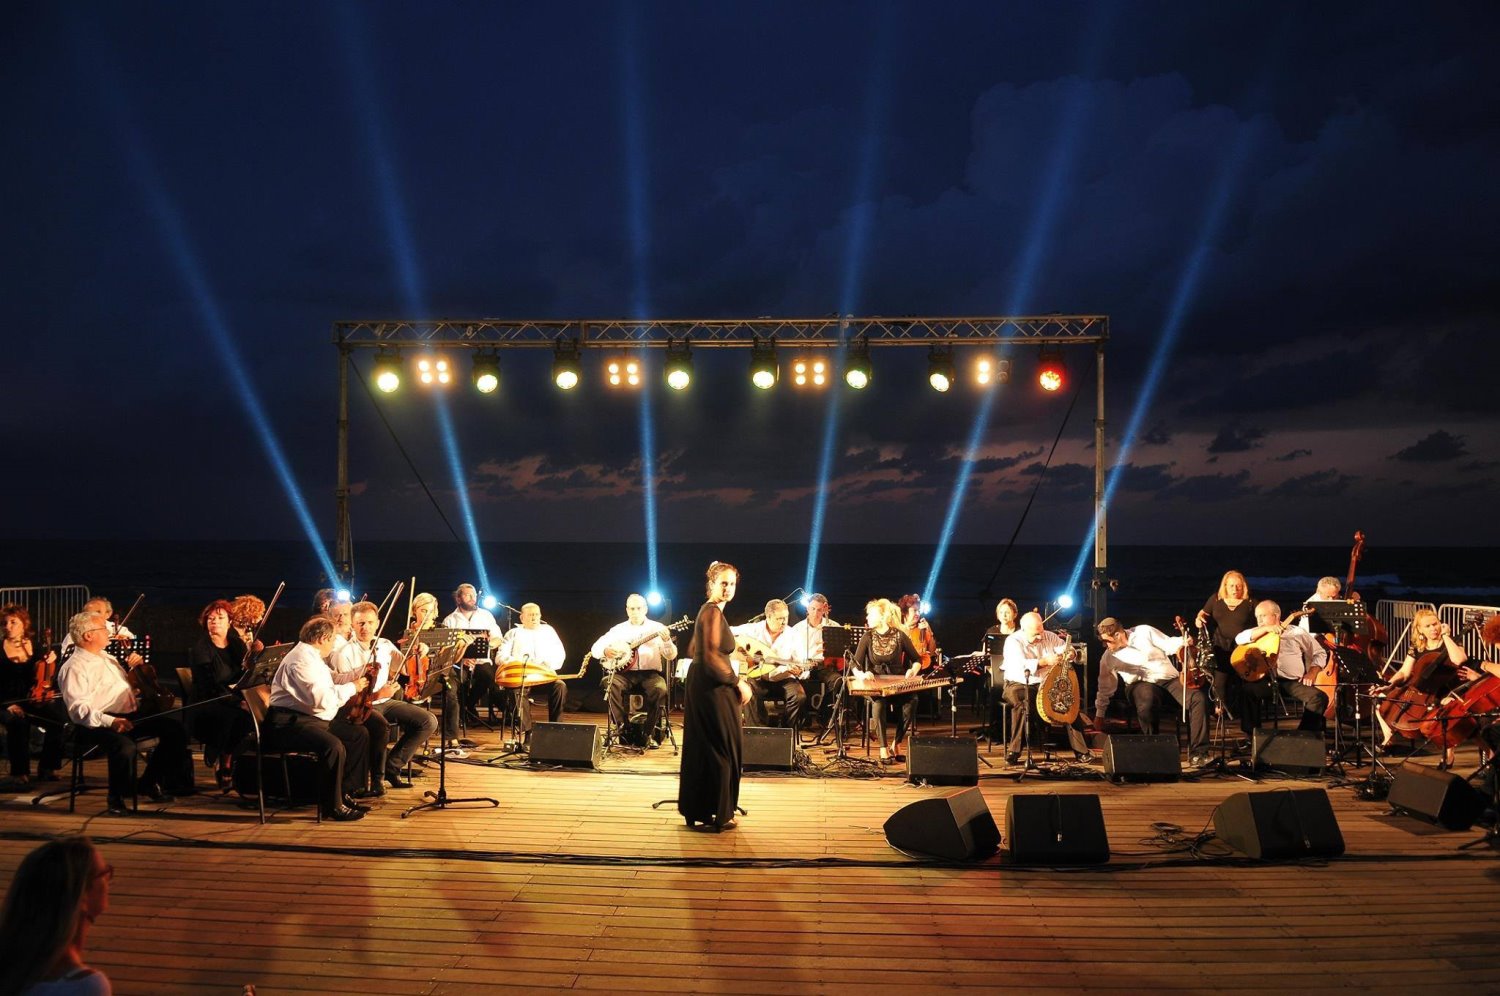 התזמורת האנדלוסית הישראלית אשדוד. צילום: יח"צ